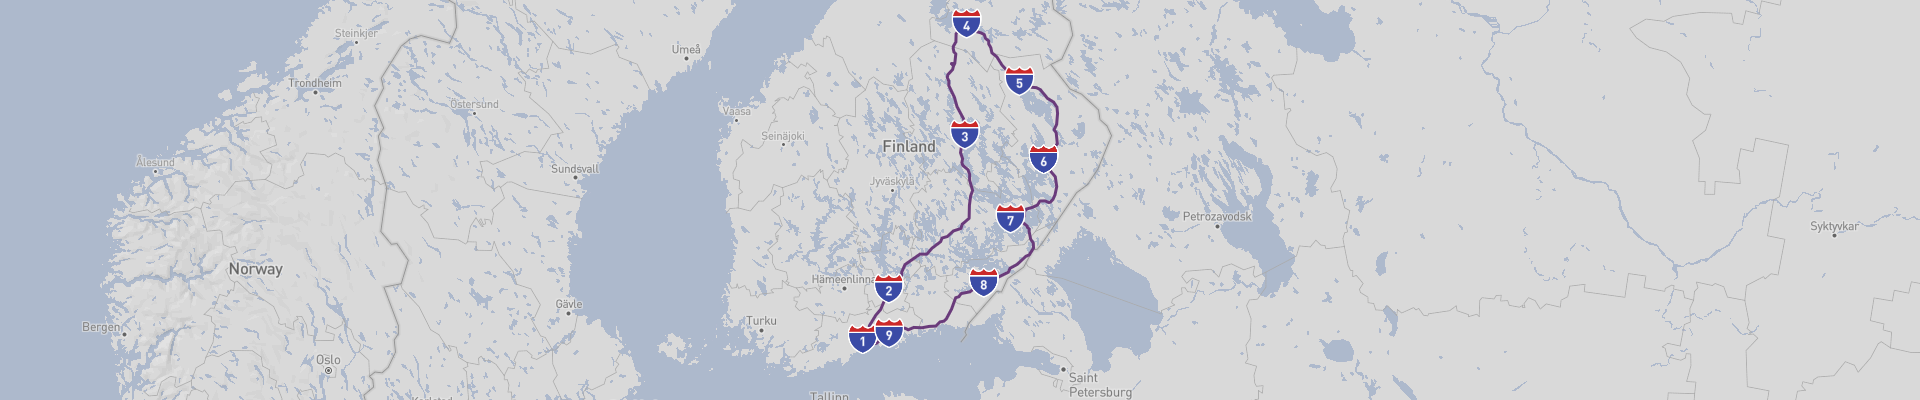 Ost-Finnland Roadtrip